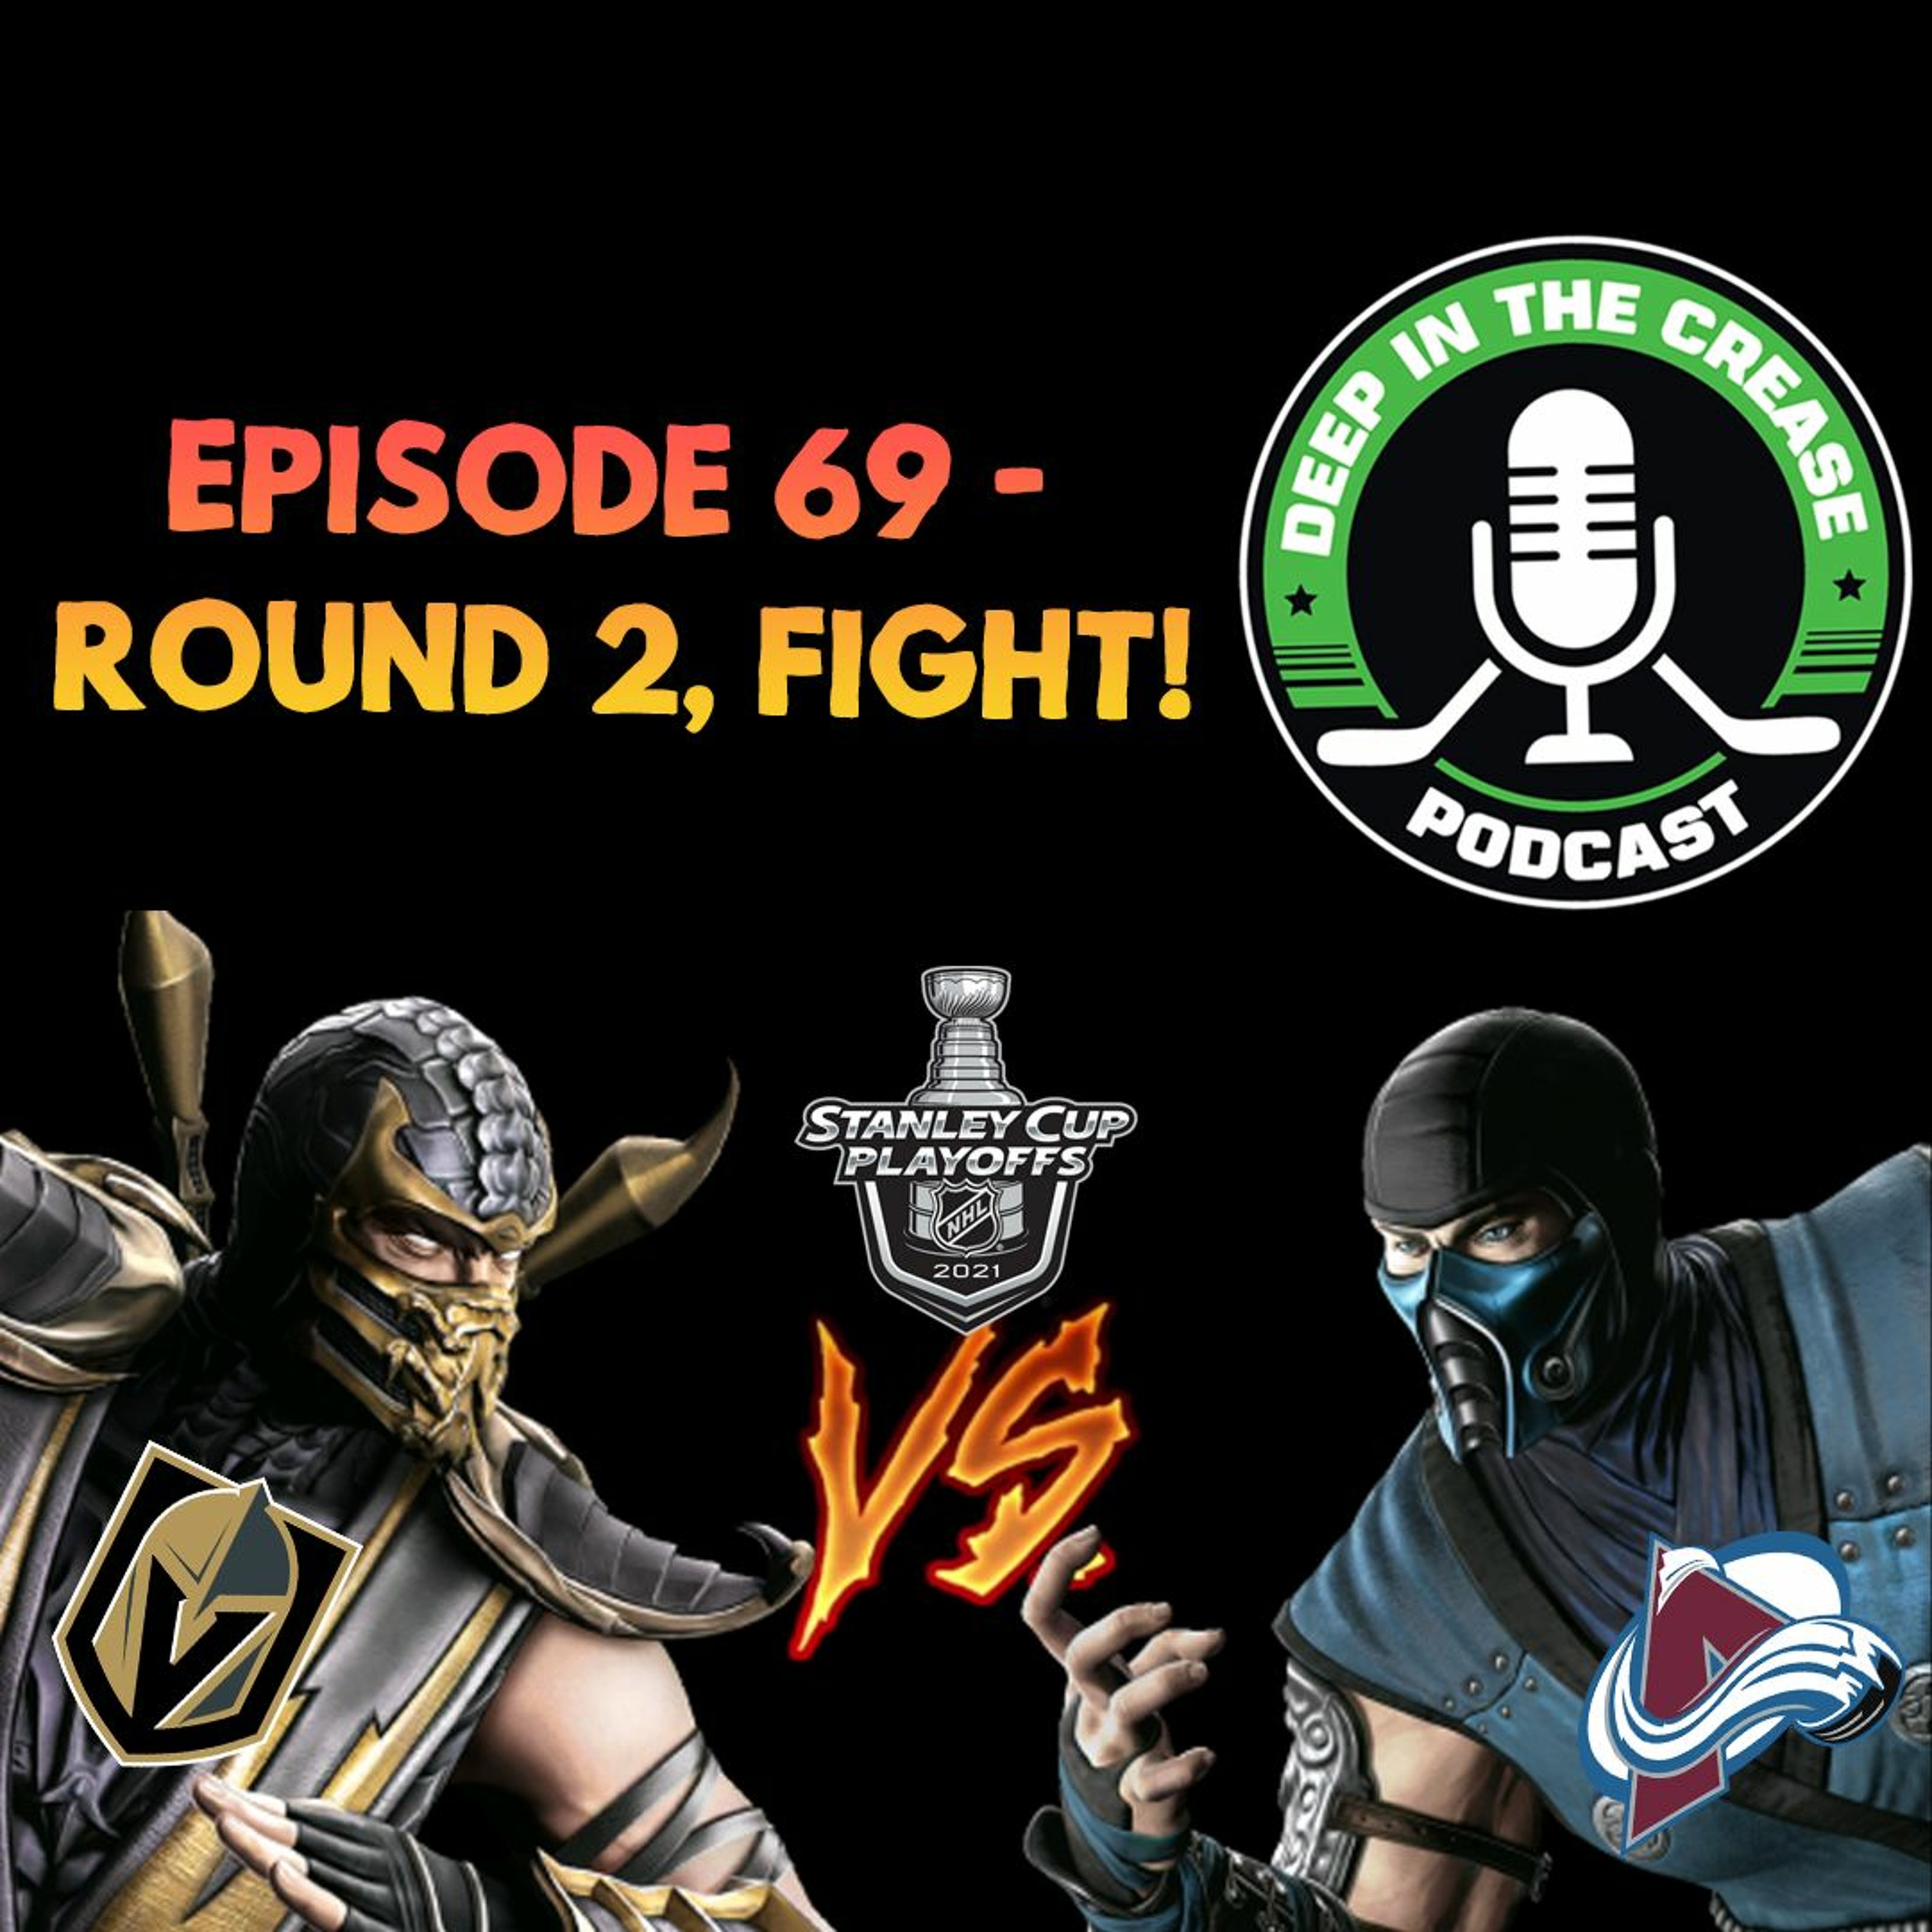 Episode 69 - Round 2, FIGHT!